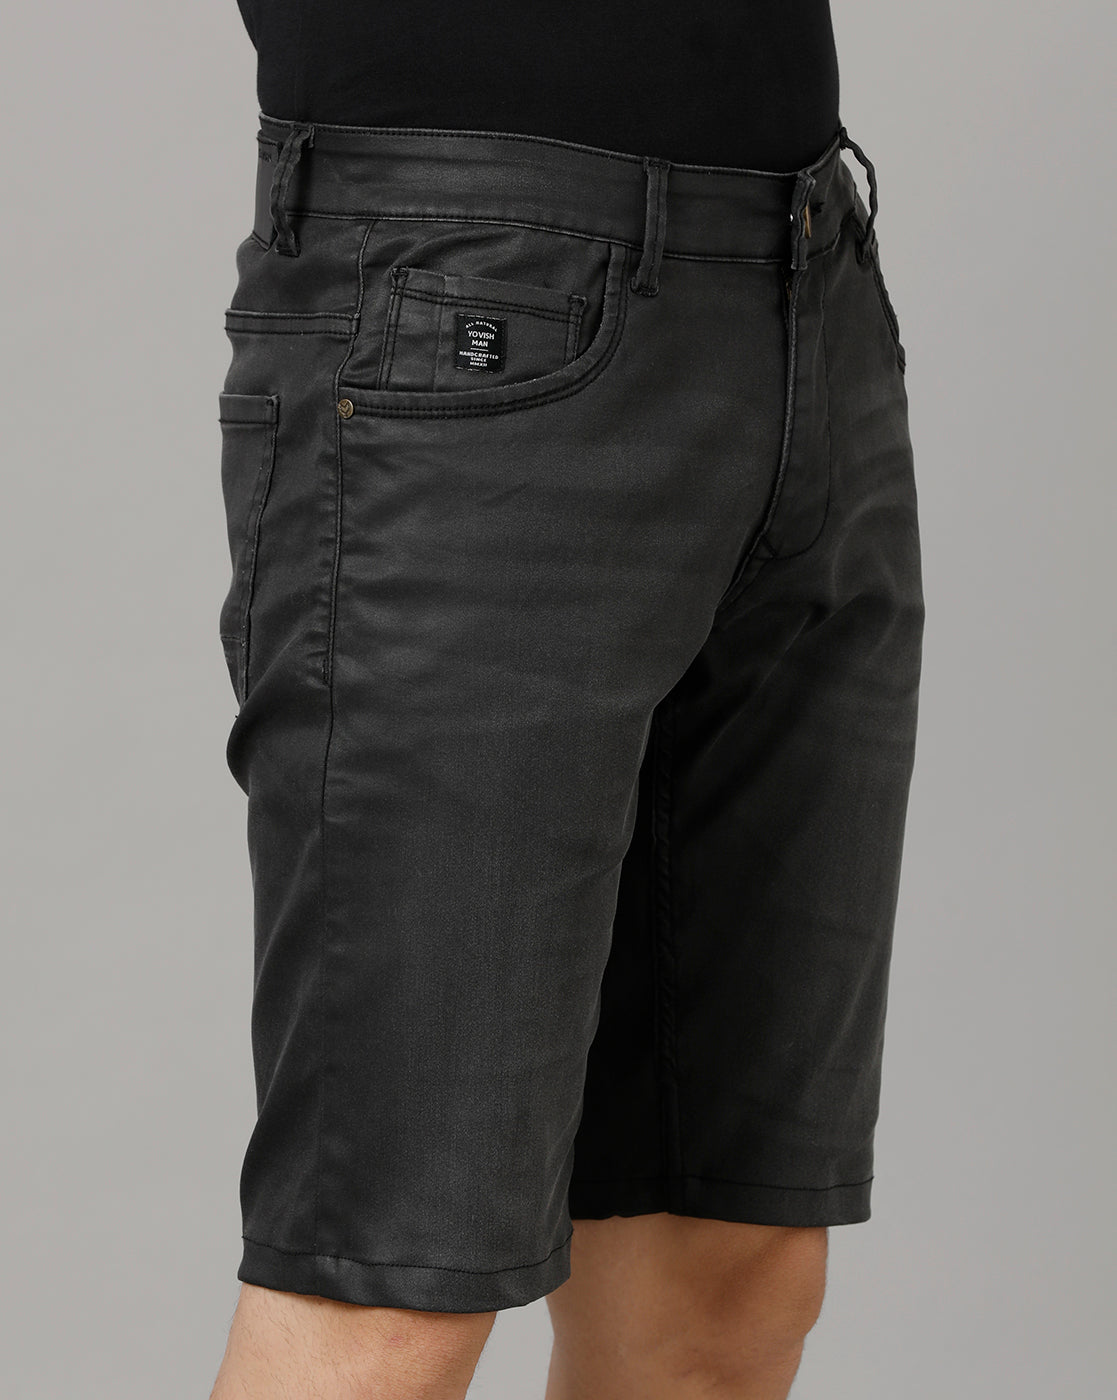 Black leather shorts